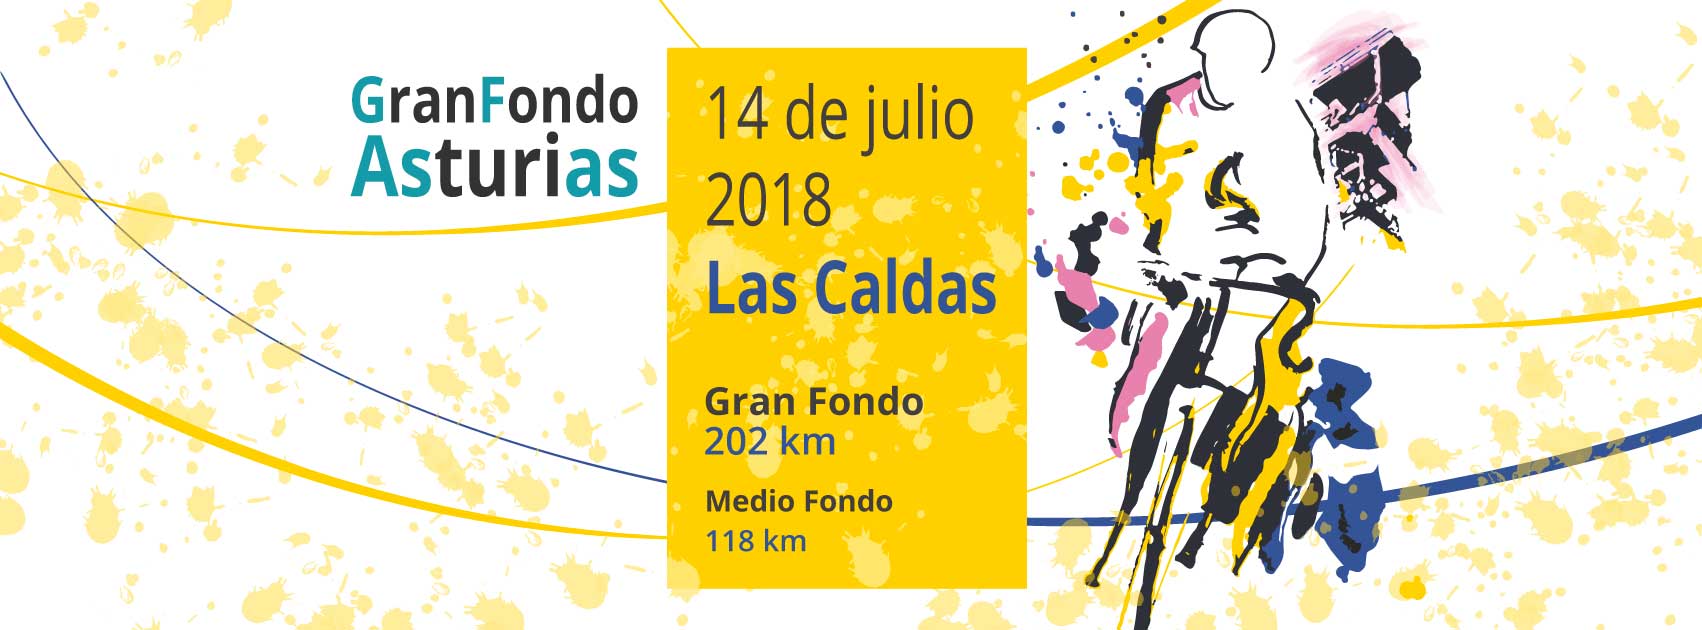 Información Gran Fondo Asturias 2018